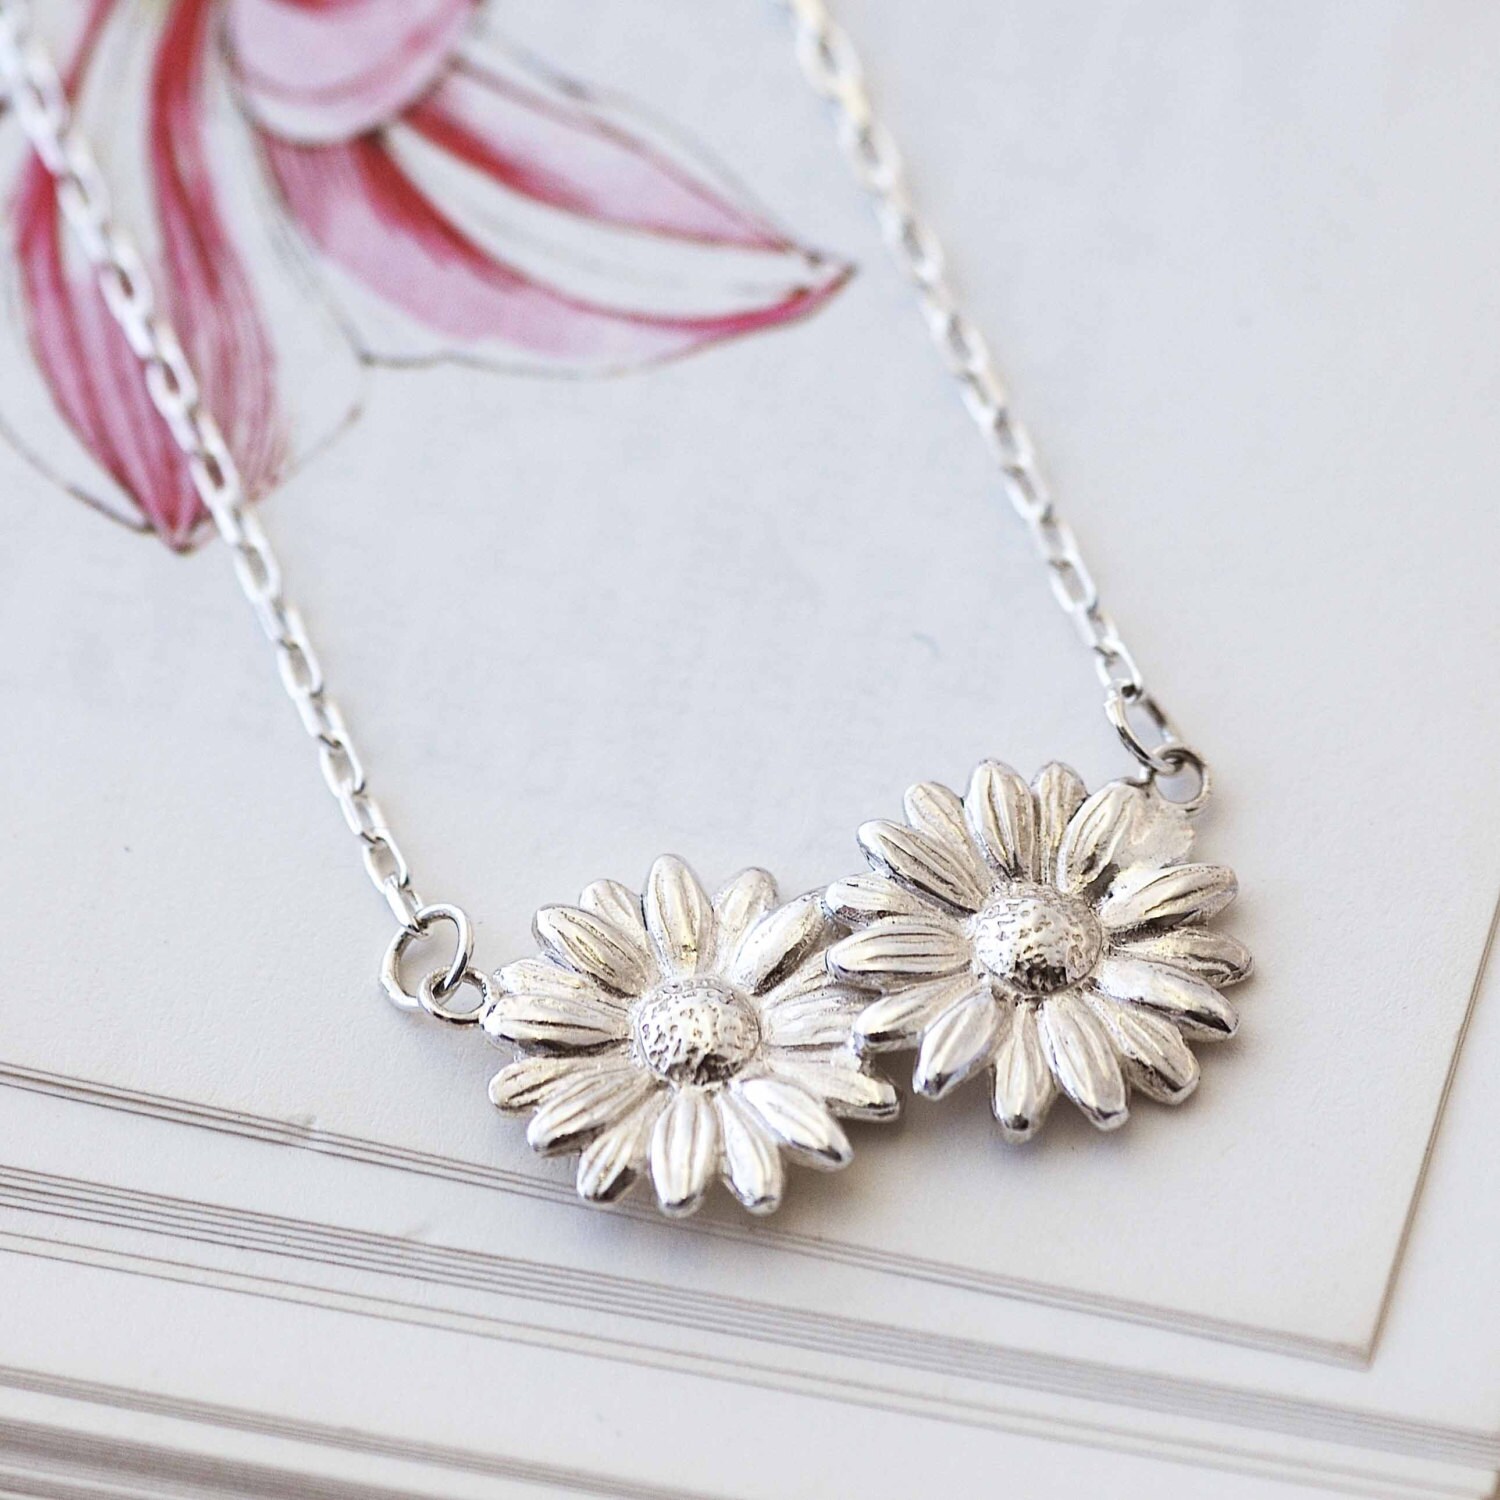 Daisy Necklace silver flower necklace Uk maker